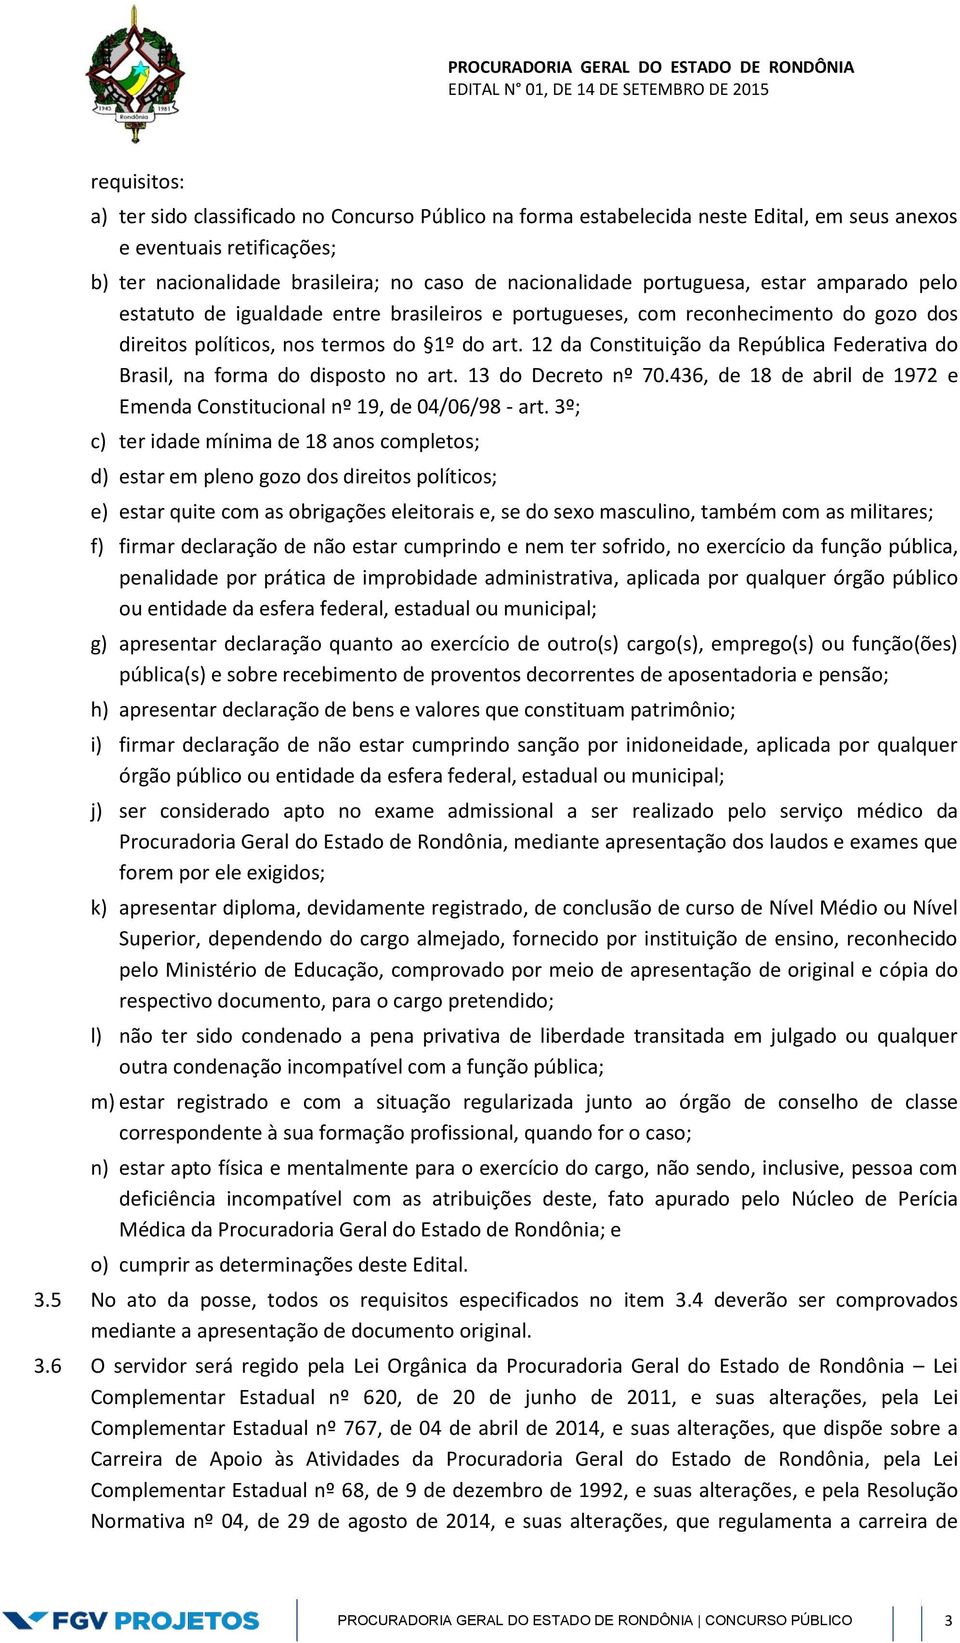 12 da Constituição da República Federativa do Brasil, na forma do disposto no art. 13 do Decreto nº 70.436, de 18 de abril de 1972 e Emenda Constitucional nº 19, de 04/06/98 - art.